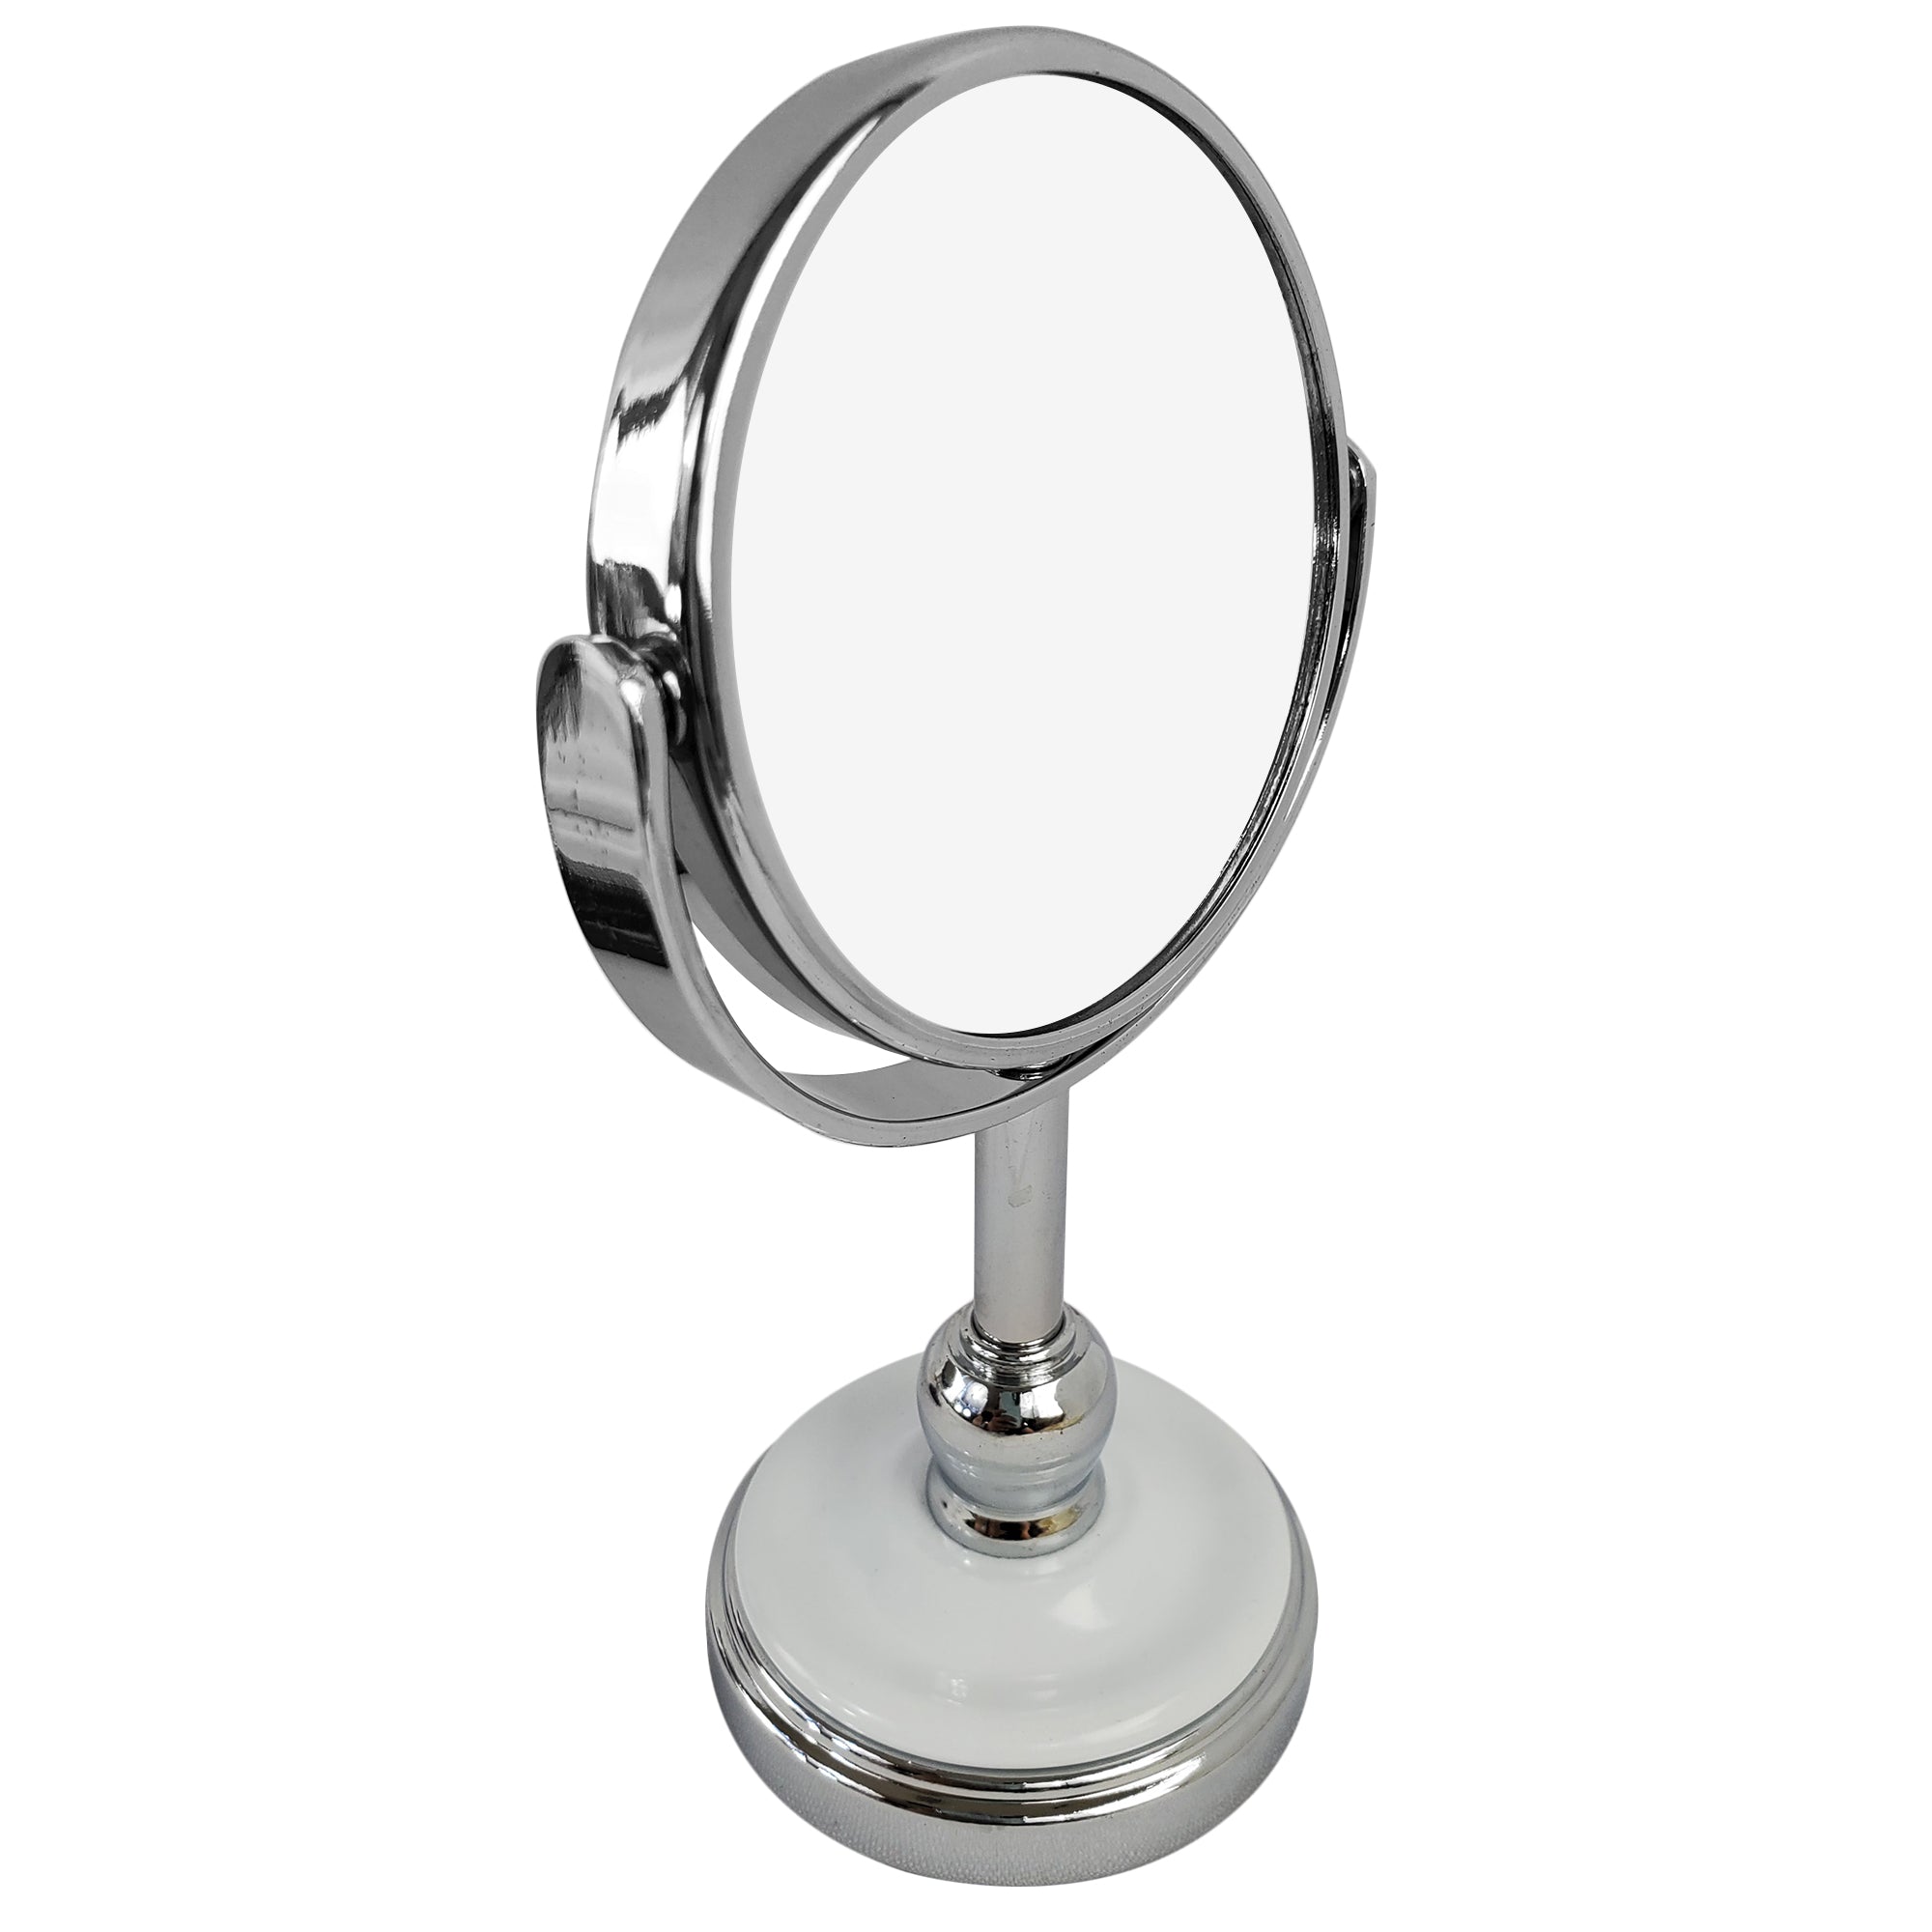 Mini Makeup Magnifying Vanity Mirror White Ceramic Base (M990)